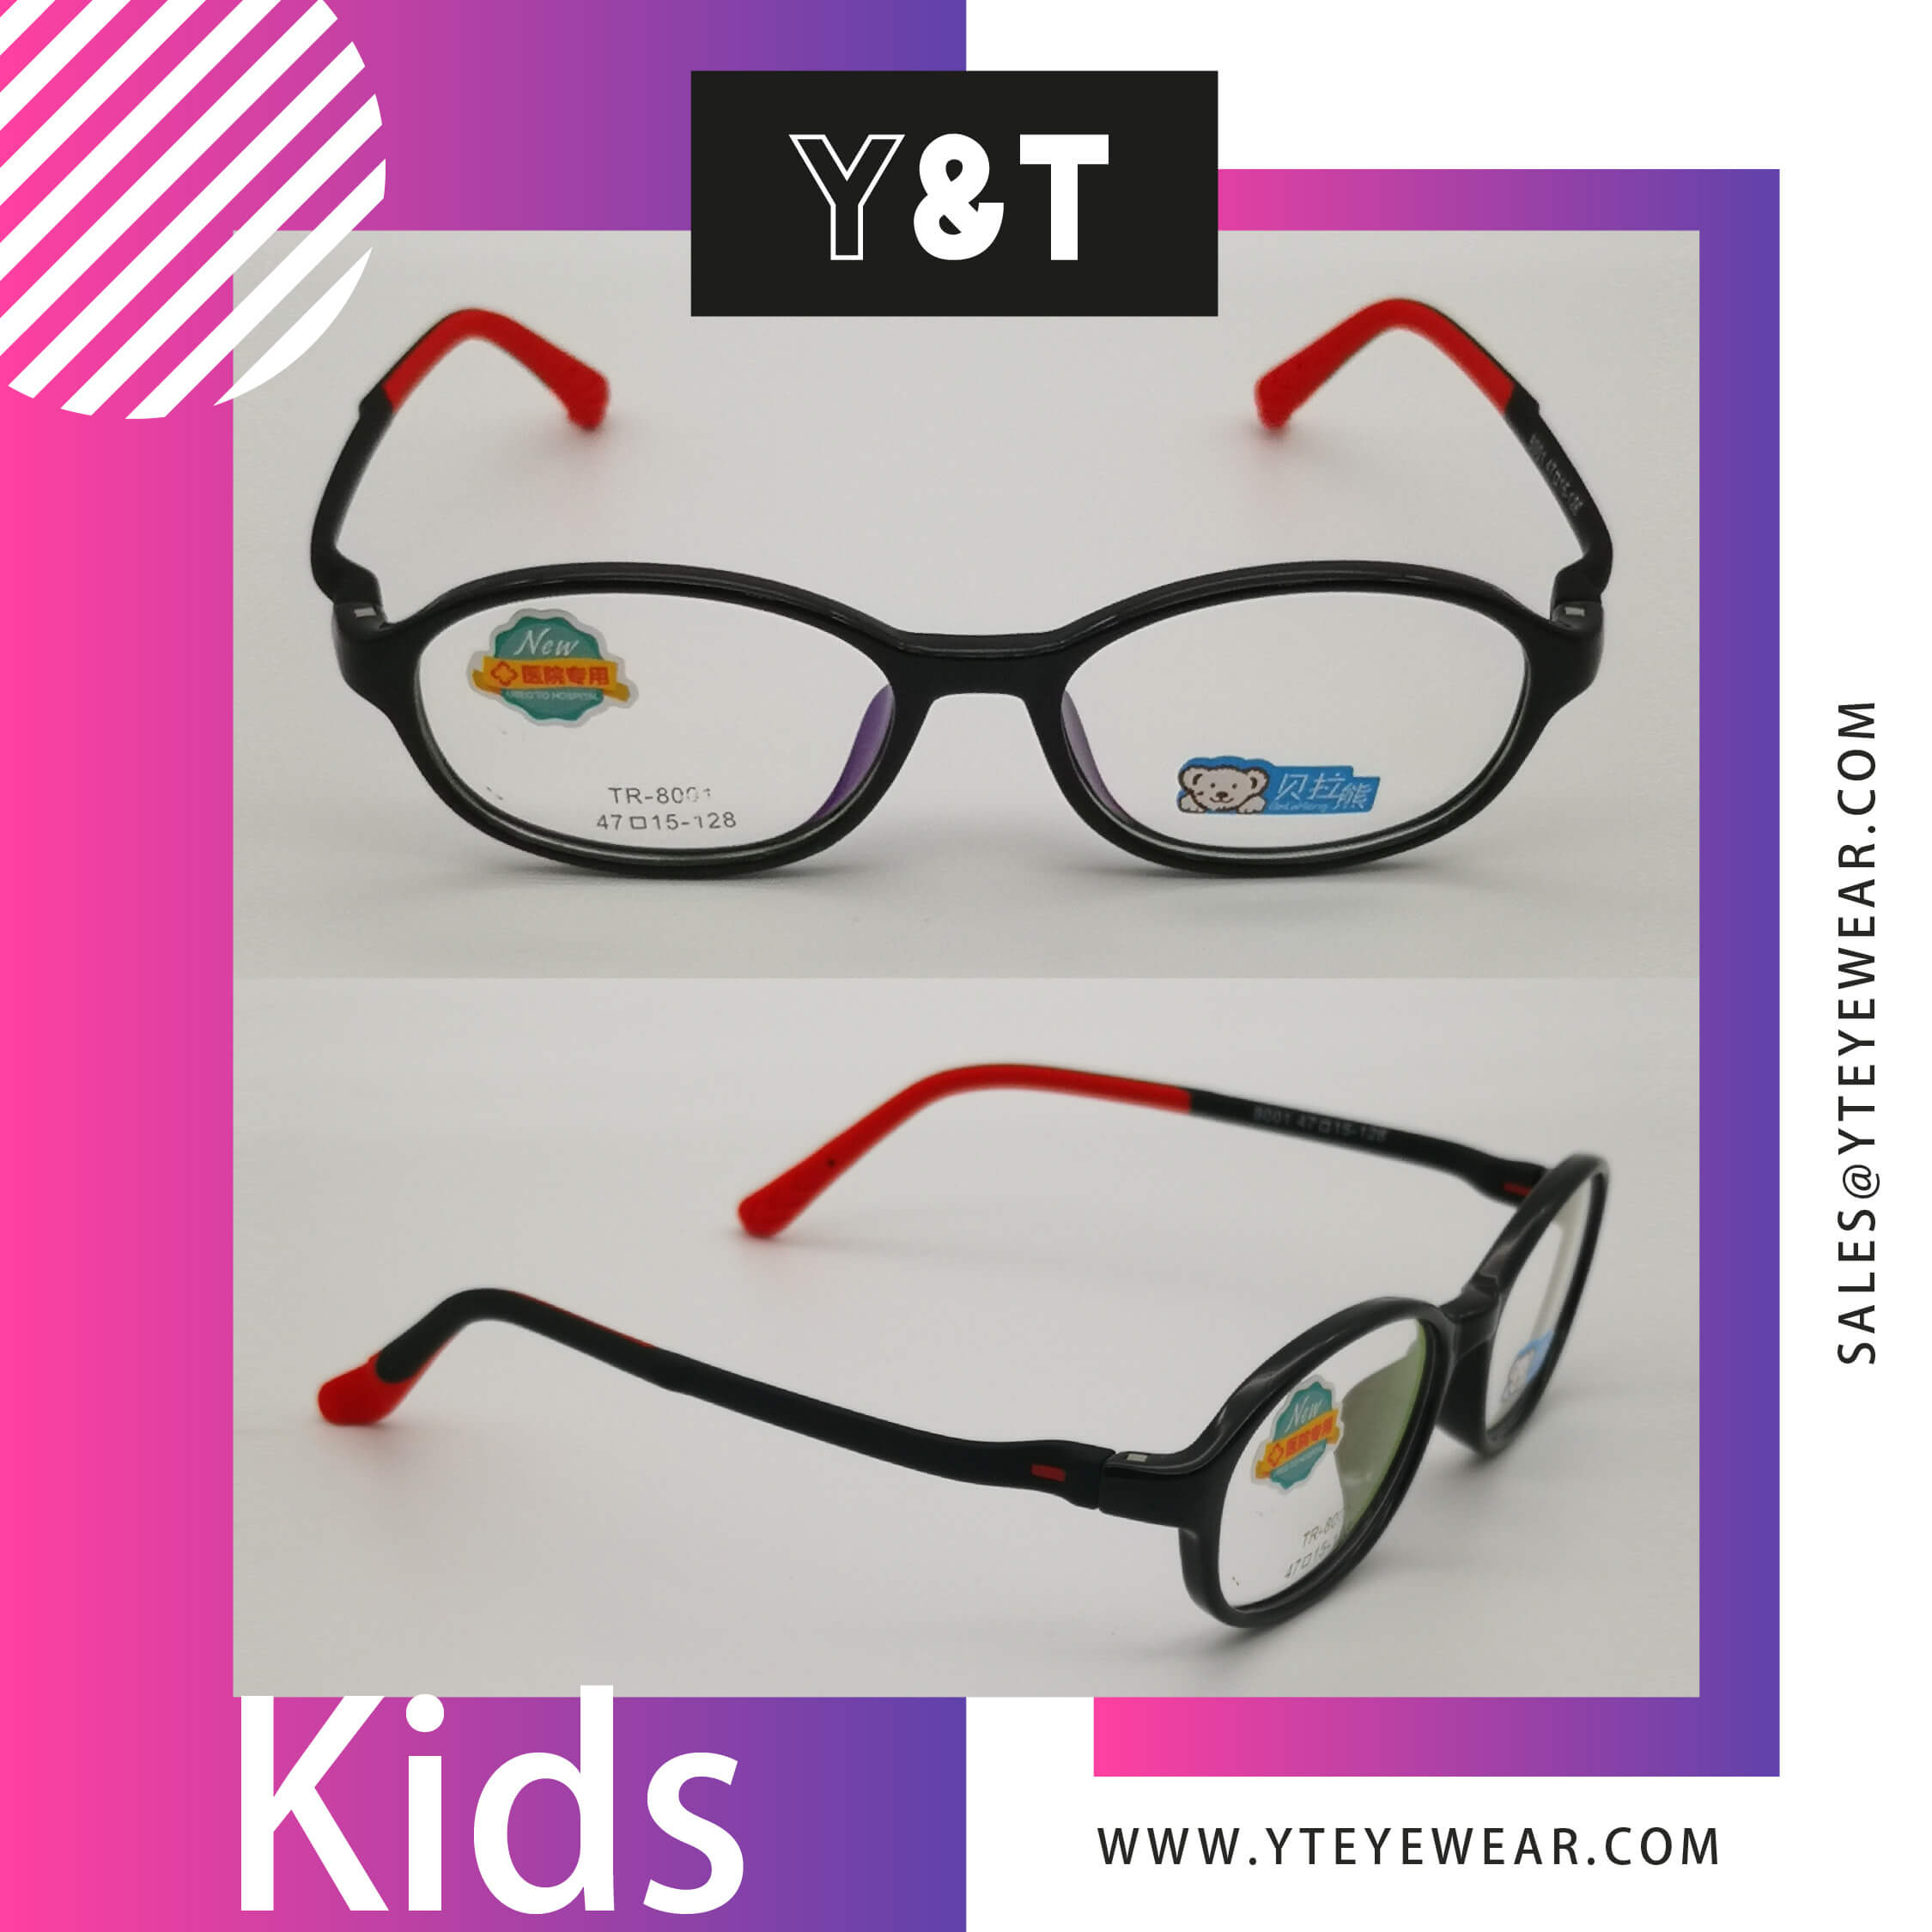 Kids glasses